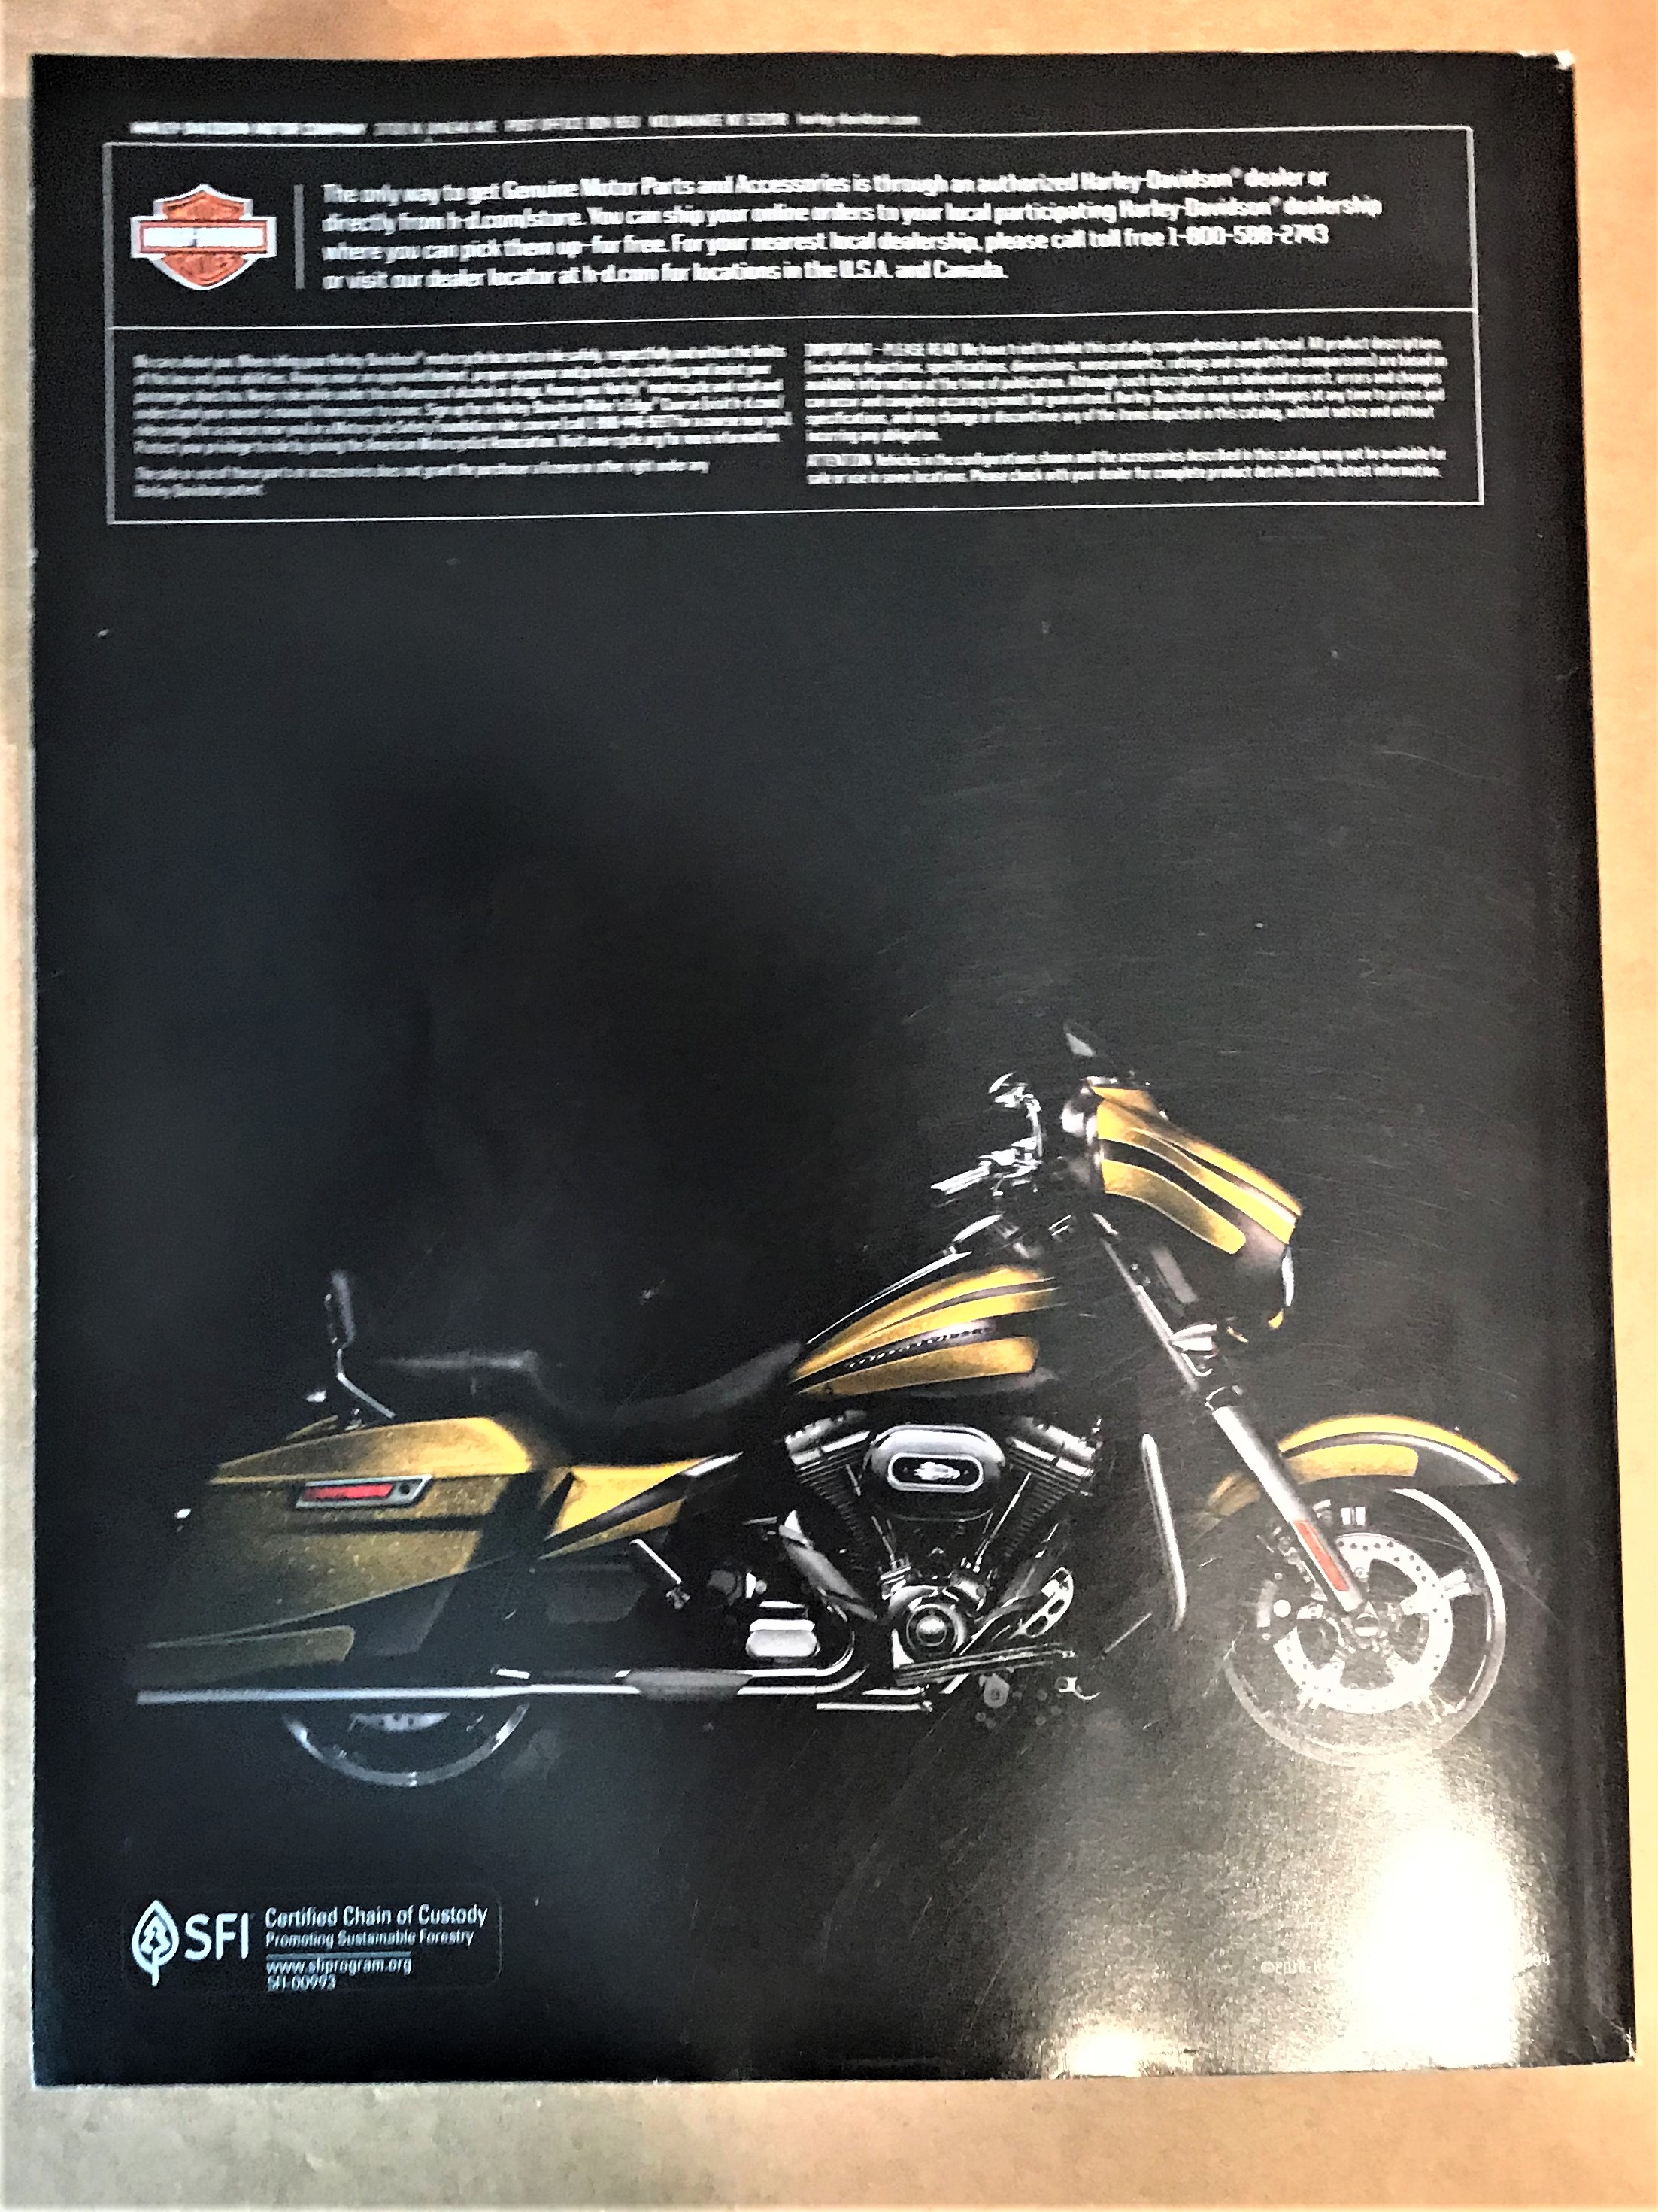 Harley Davidson 2014 Genuine Accessories Catalog, 42%